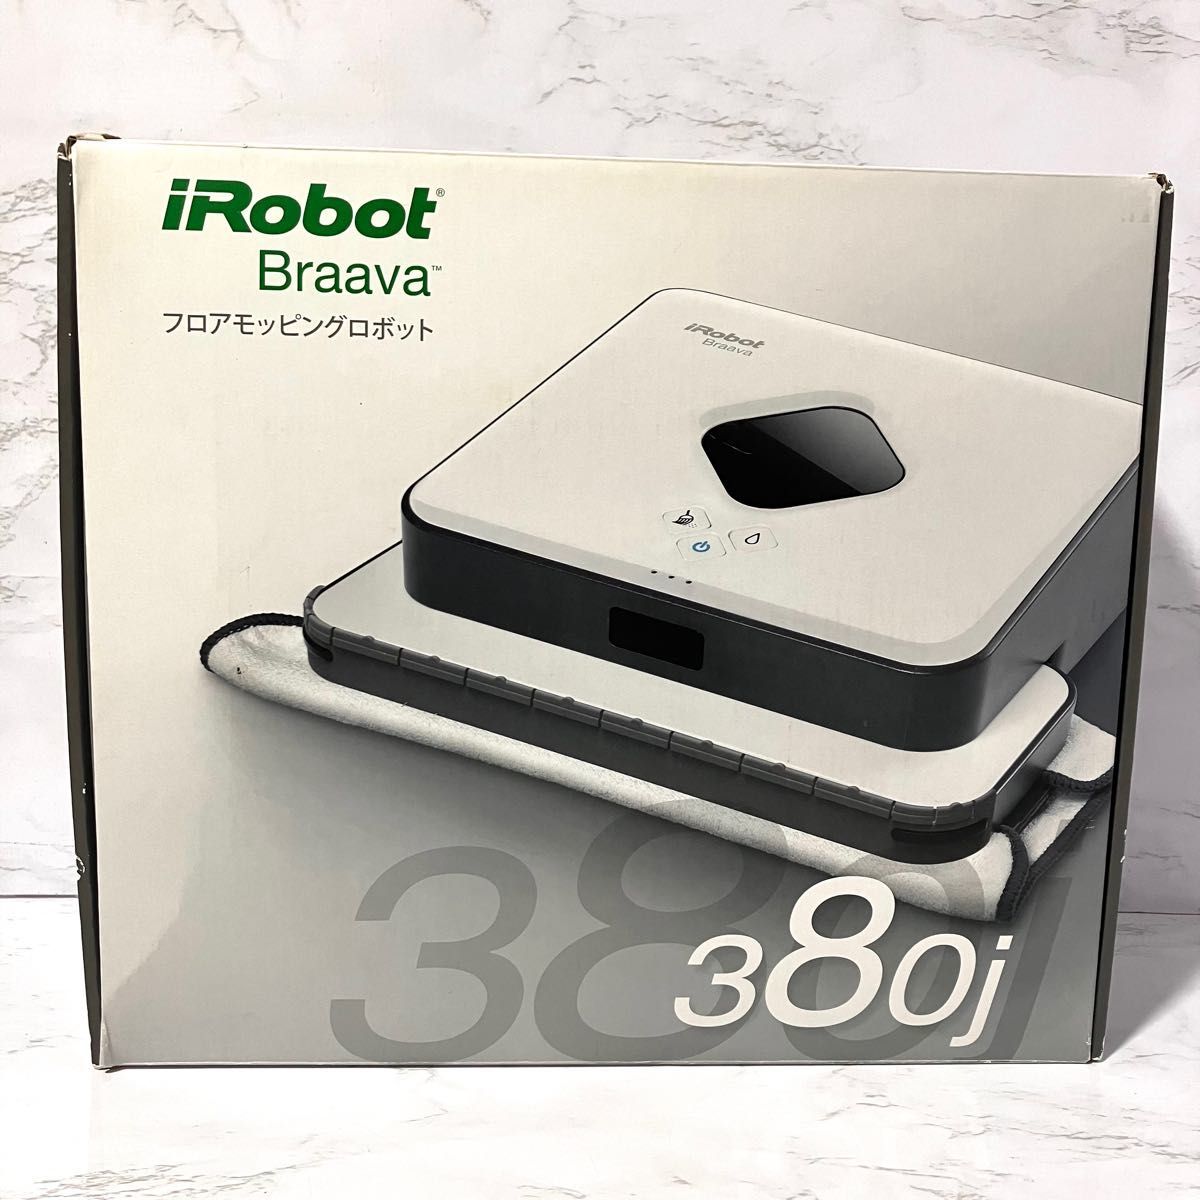 ヤフオク! -「380j」(iRobot)の中古品・新品・古着一覧